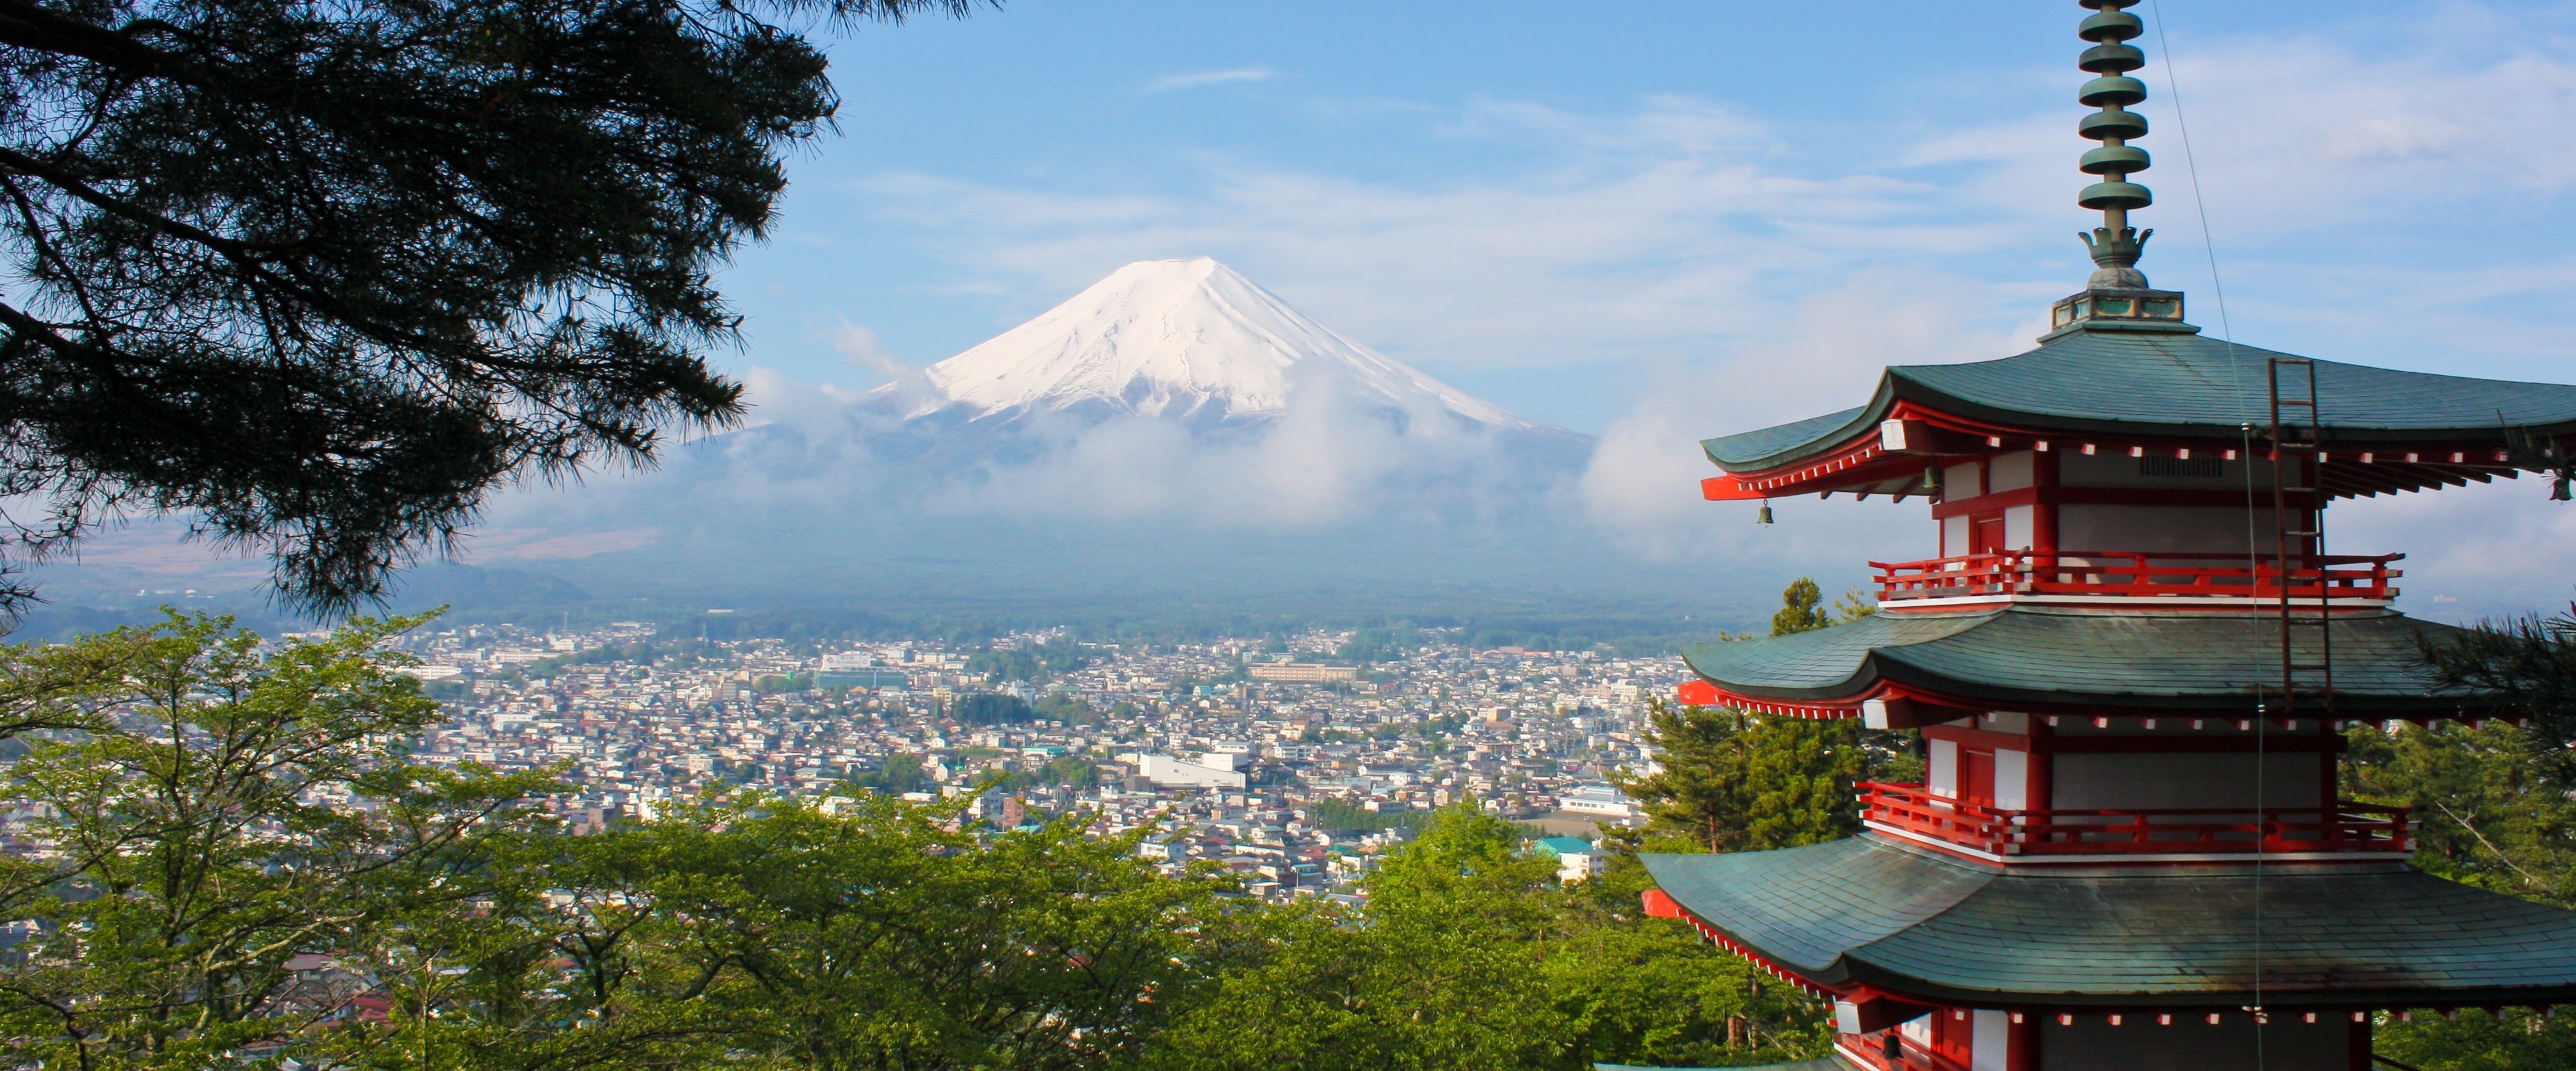 widok panoramiczny na górę Fuji - oferta wycieczek objazdowych po Japonii dostępna w biurze podróży OdraTravel w Szczecinie